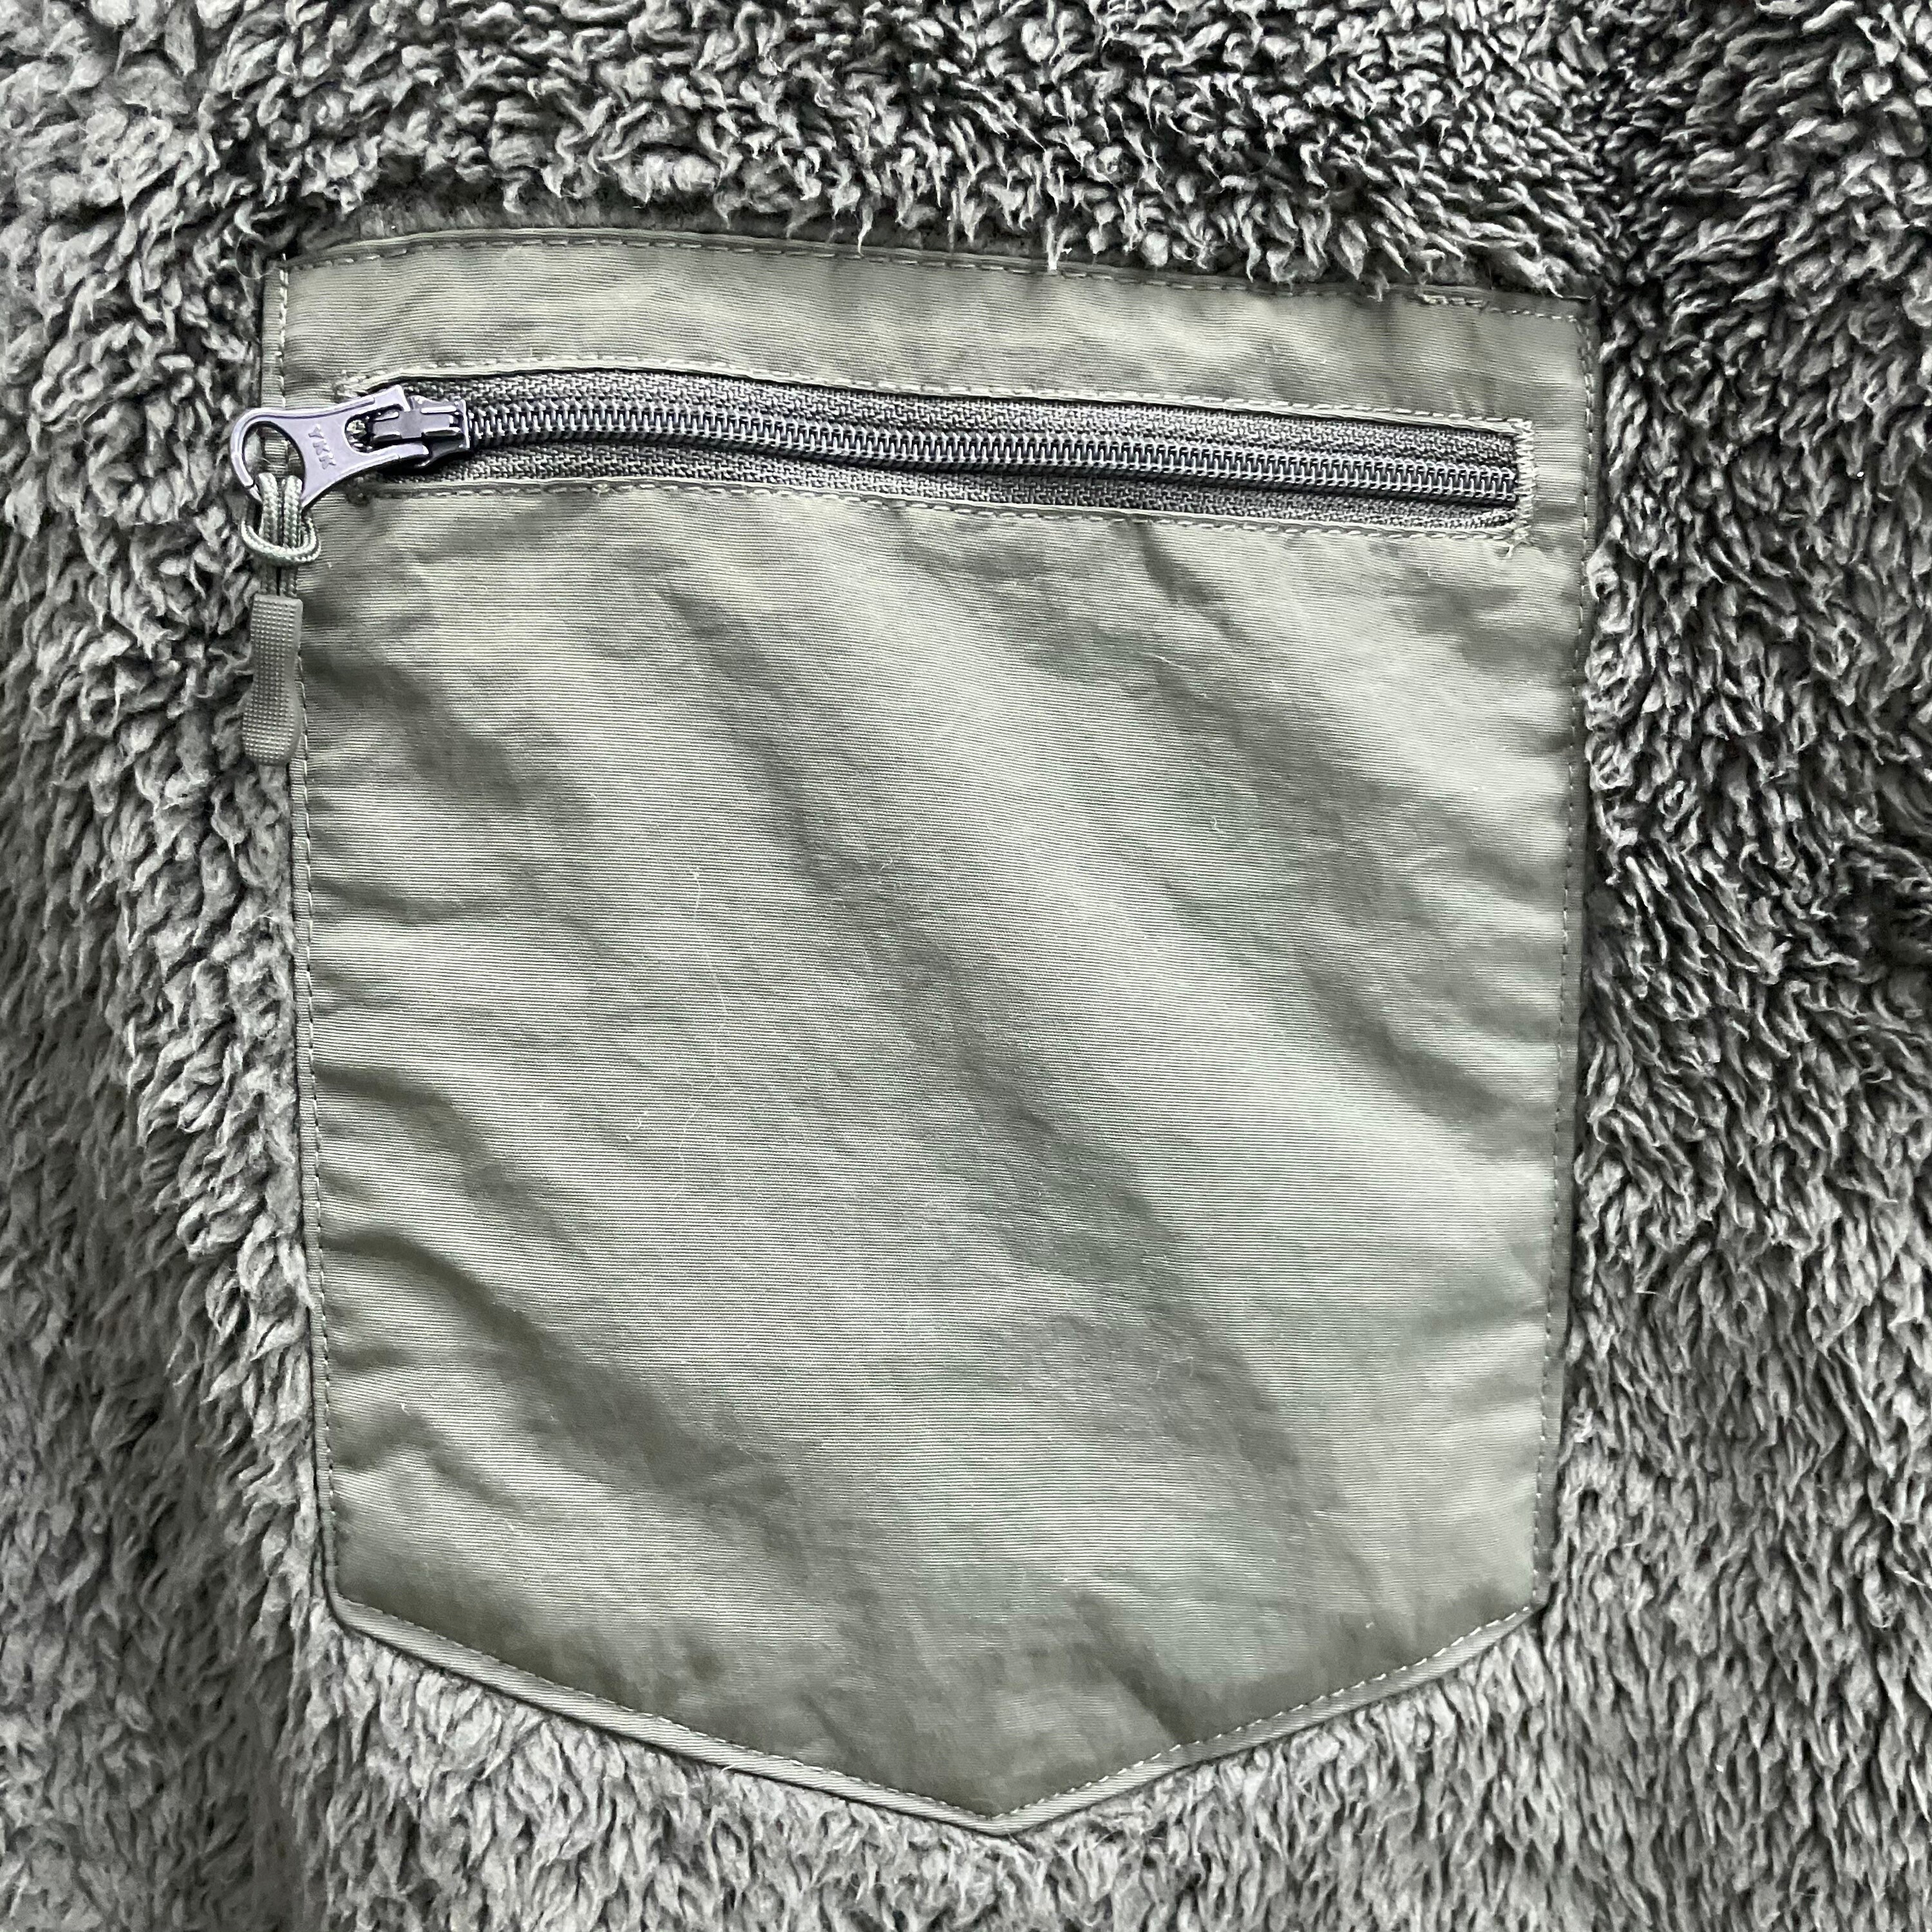 PICK !! Y2K Engineered Garments X Uniqlo BeIge Pile Fleece Army Sherpa  Jacket Sweater Autumn Winter Street Fashion Outdoor Life Streetwear